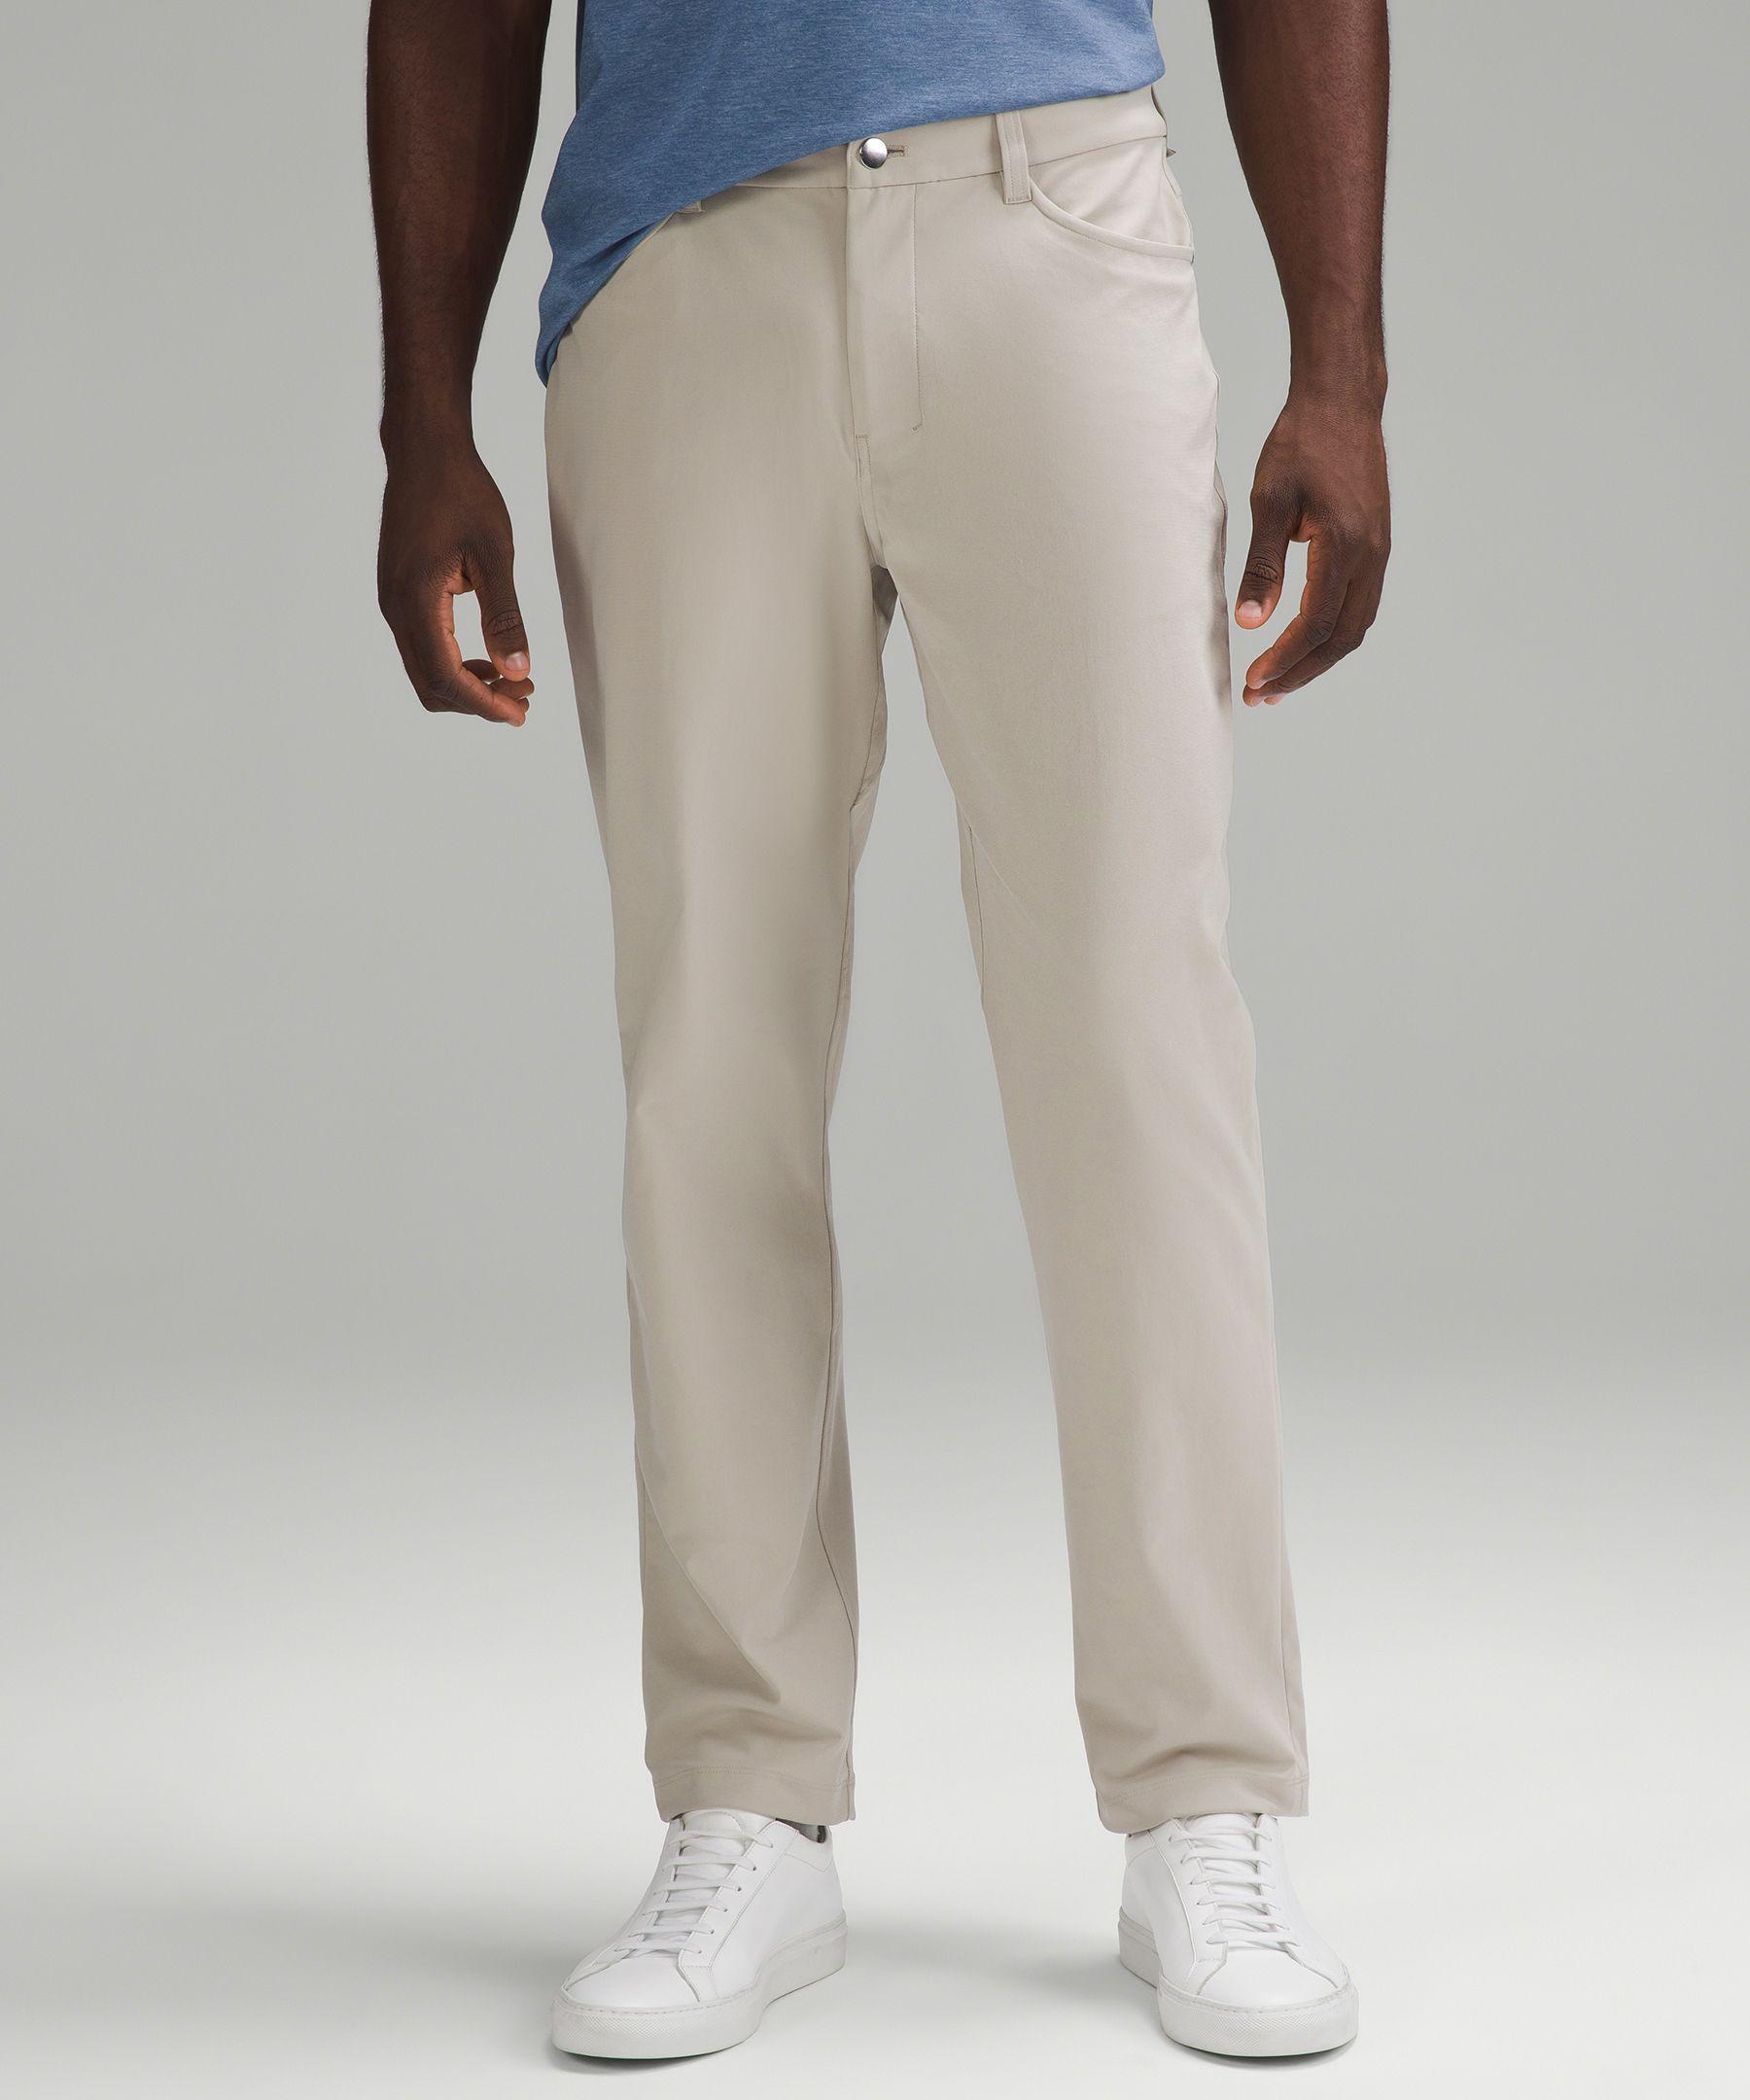 https://cdna.lystit.com/photos/lululemon/de41959b/lululemon-athletica-designer-Raw-Linen-Abc-Classic-fit-5-Pocket-Trousers-30l-Warpstreme-Color-Khaki-Size-28.jpeg